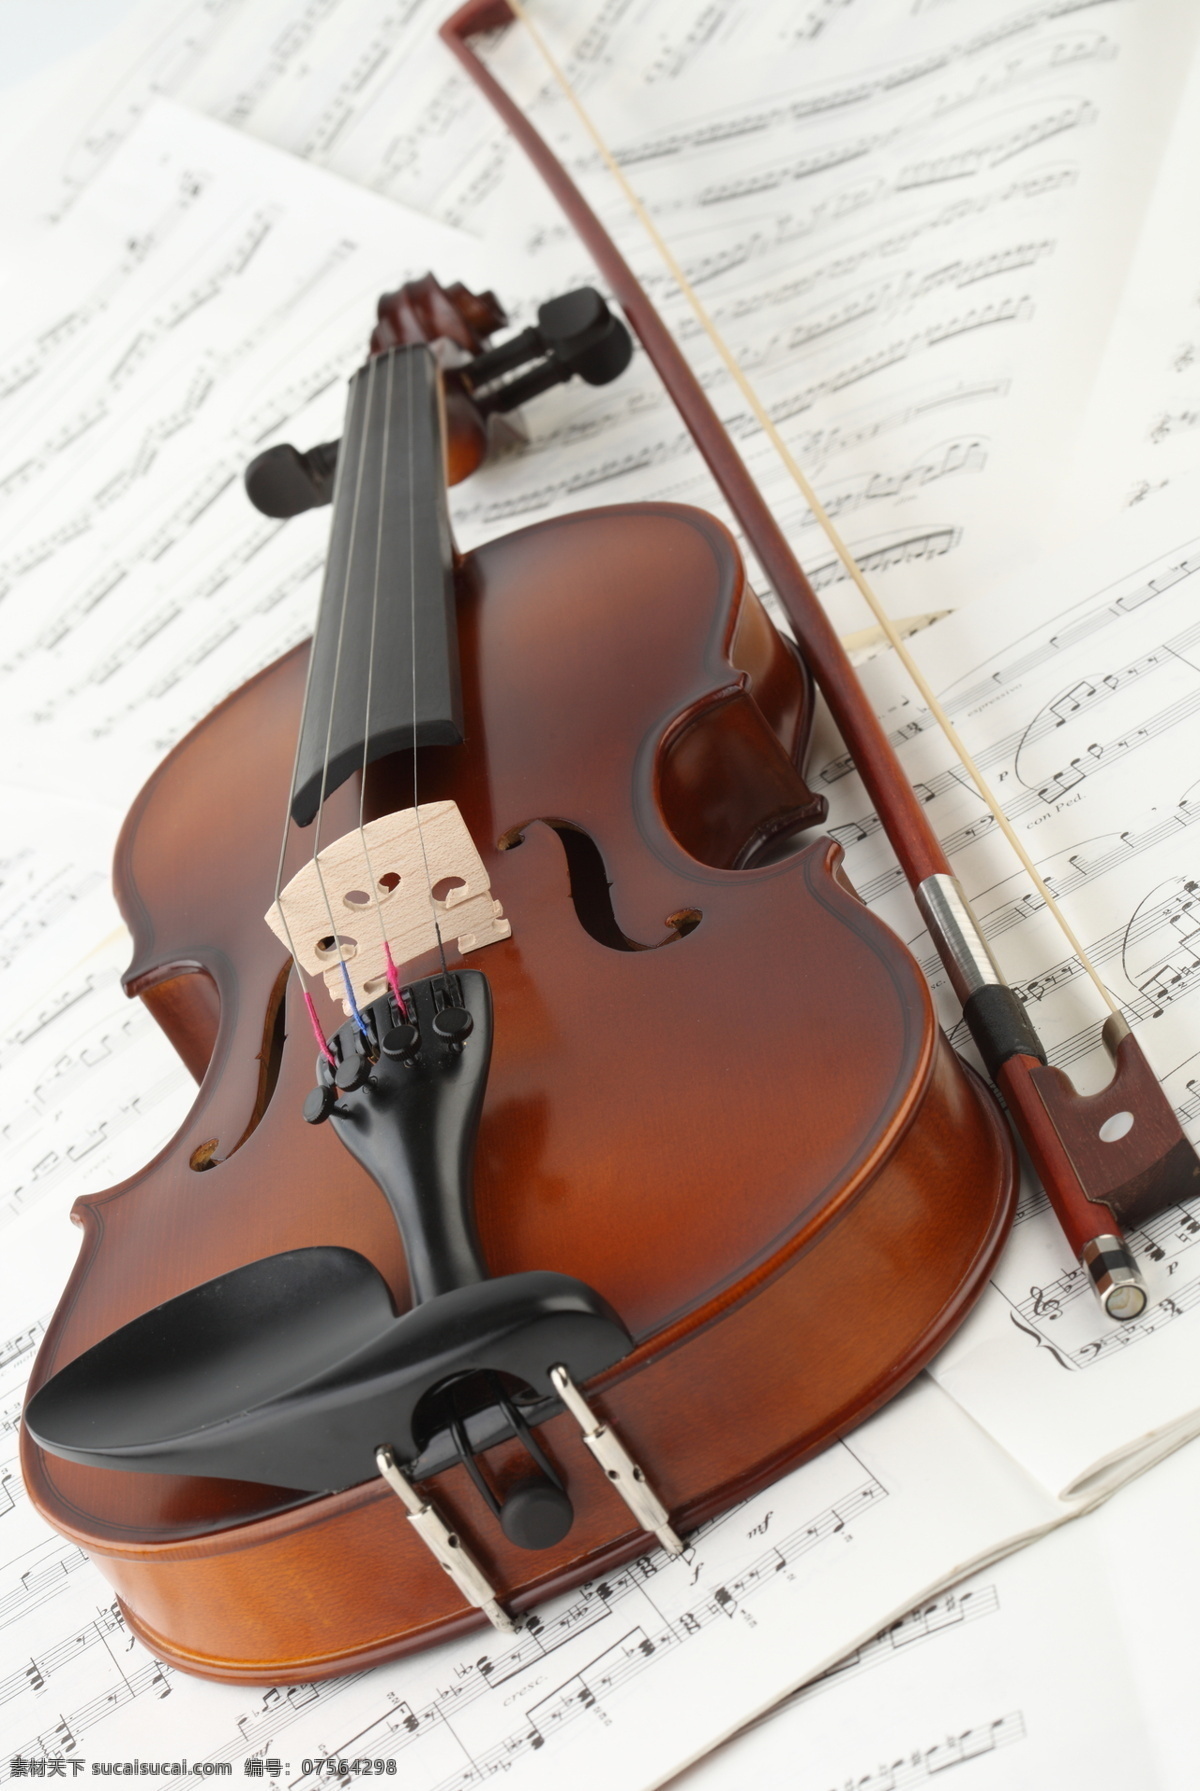 小提琴 音符 乐谱 中提琴 玫瑰 玫瑰花 鲜花 文化艺术 音乐 乐器 西洋乐器 影音娱乐 生活百科